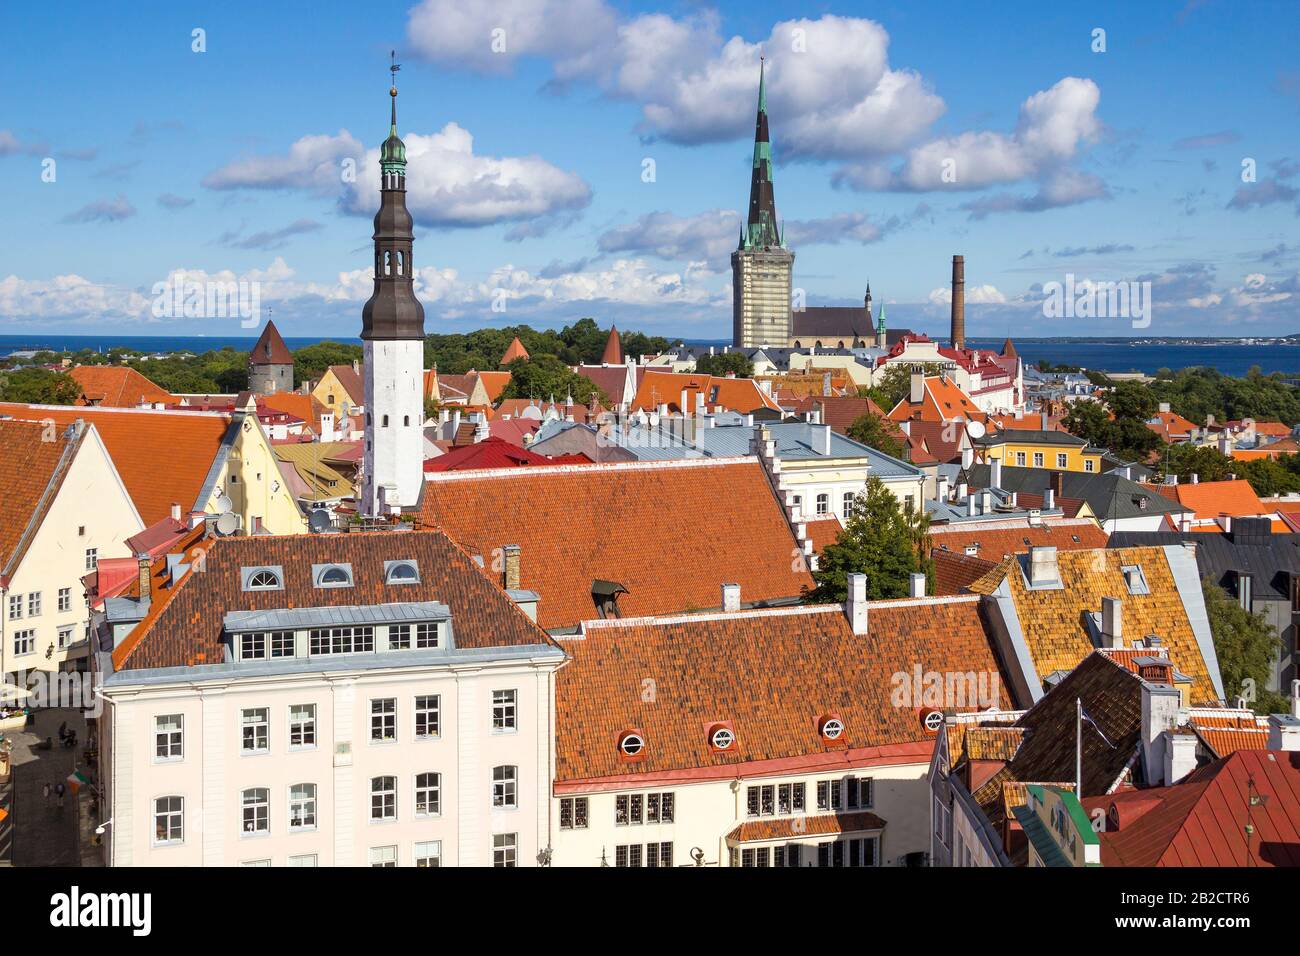 Blick auf die Altstadt von Tallinn vom Rathausturm, mit dem Platz Raekoja, der Lutherkirche Heiliger Geist, der Kirche St. Olafs, dem Hafen und der Ostsee Stockfoto